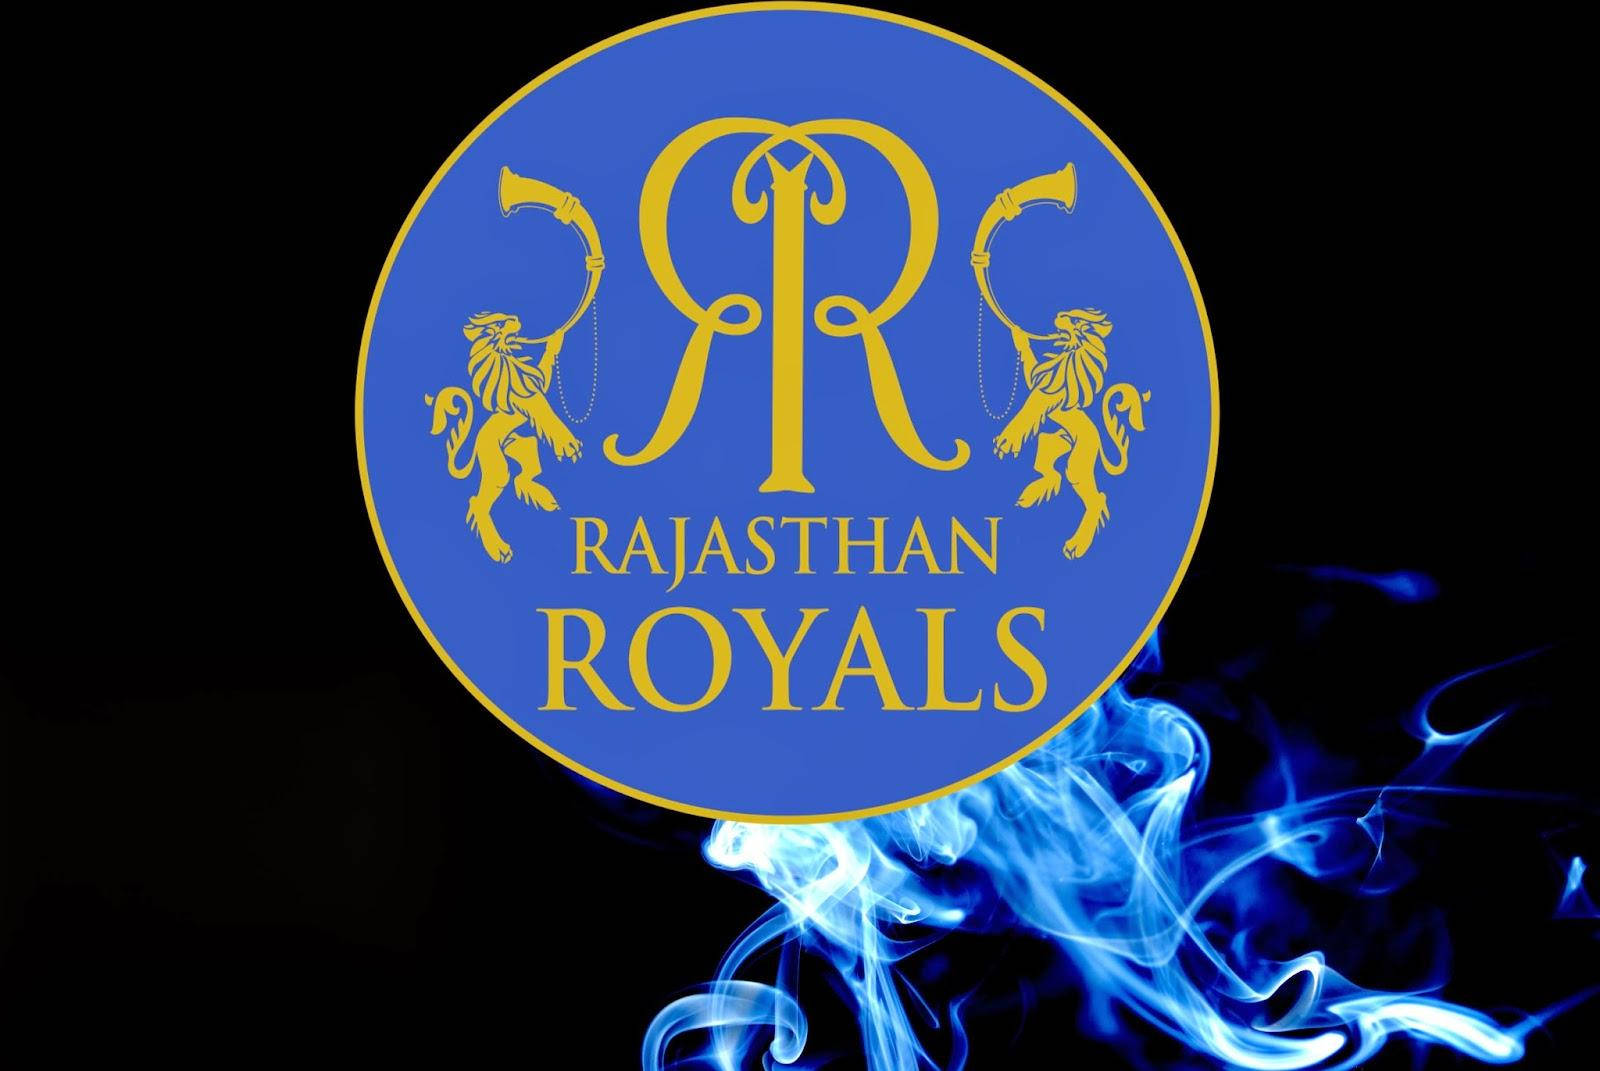 Indischescricket-team-logo Rajasthan Royals Rauch Wallpaper